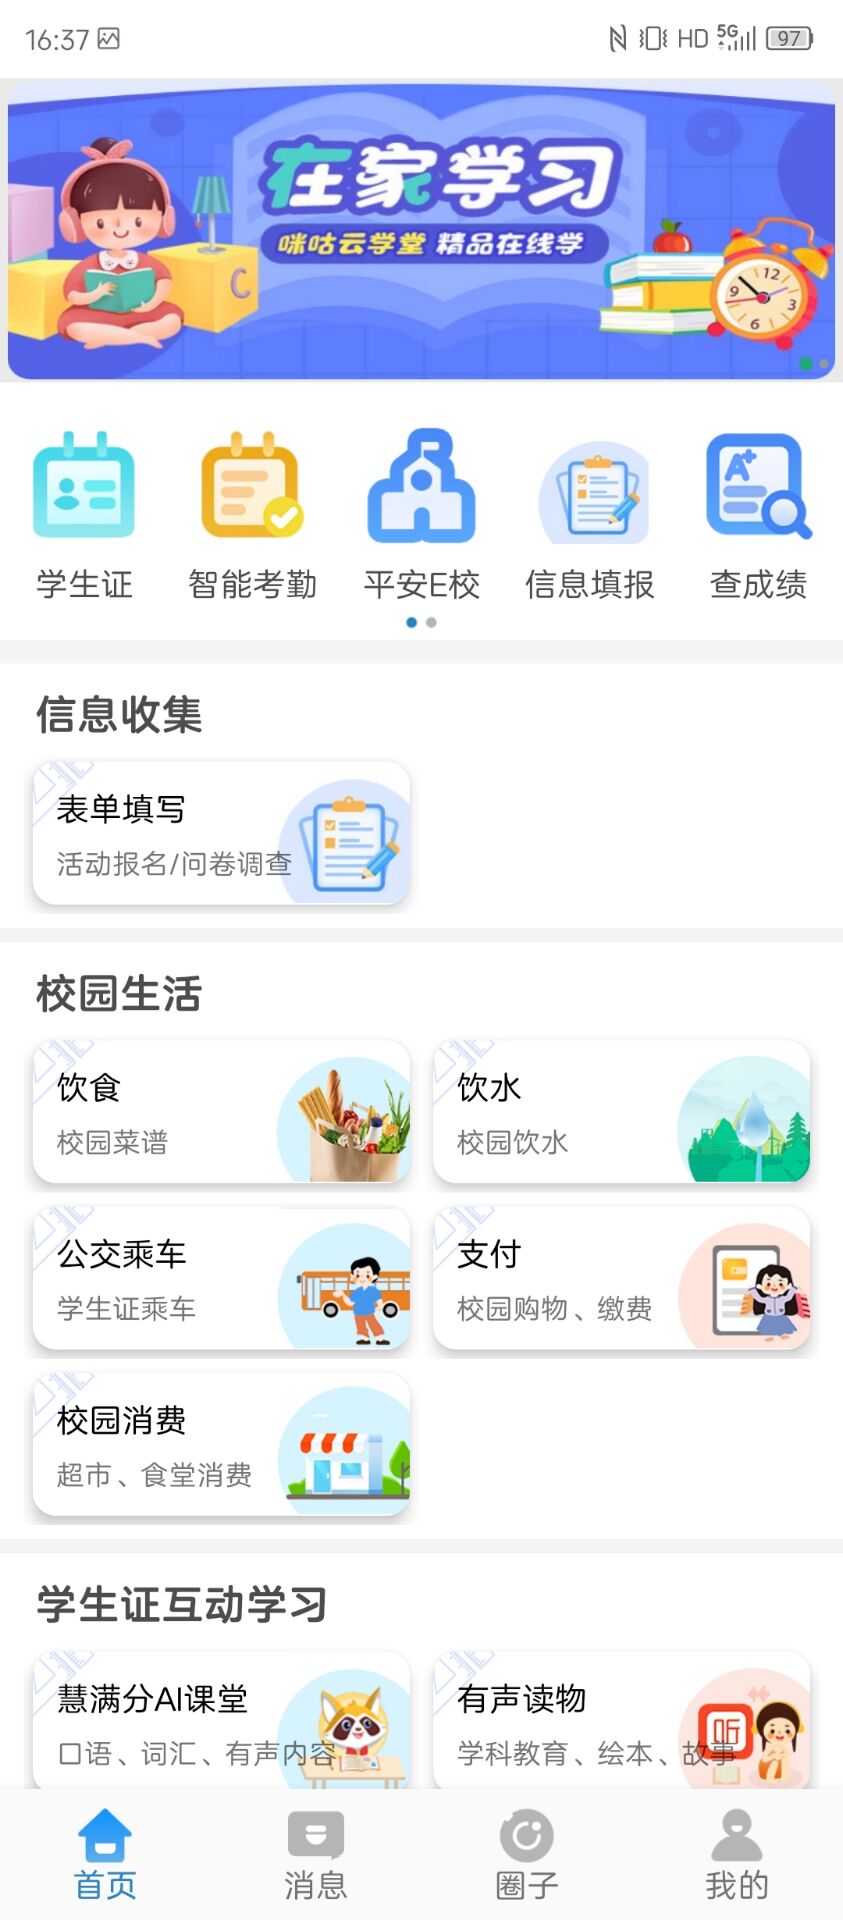 中国移动智校园app_移动智慧校园app_智校园官网